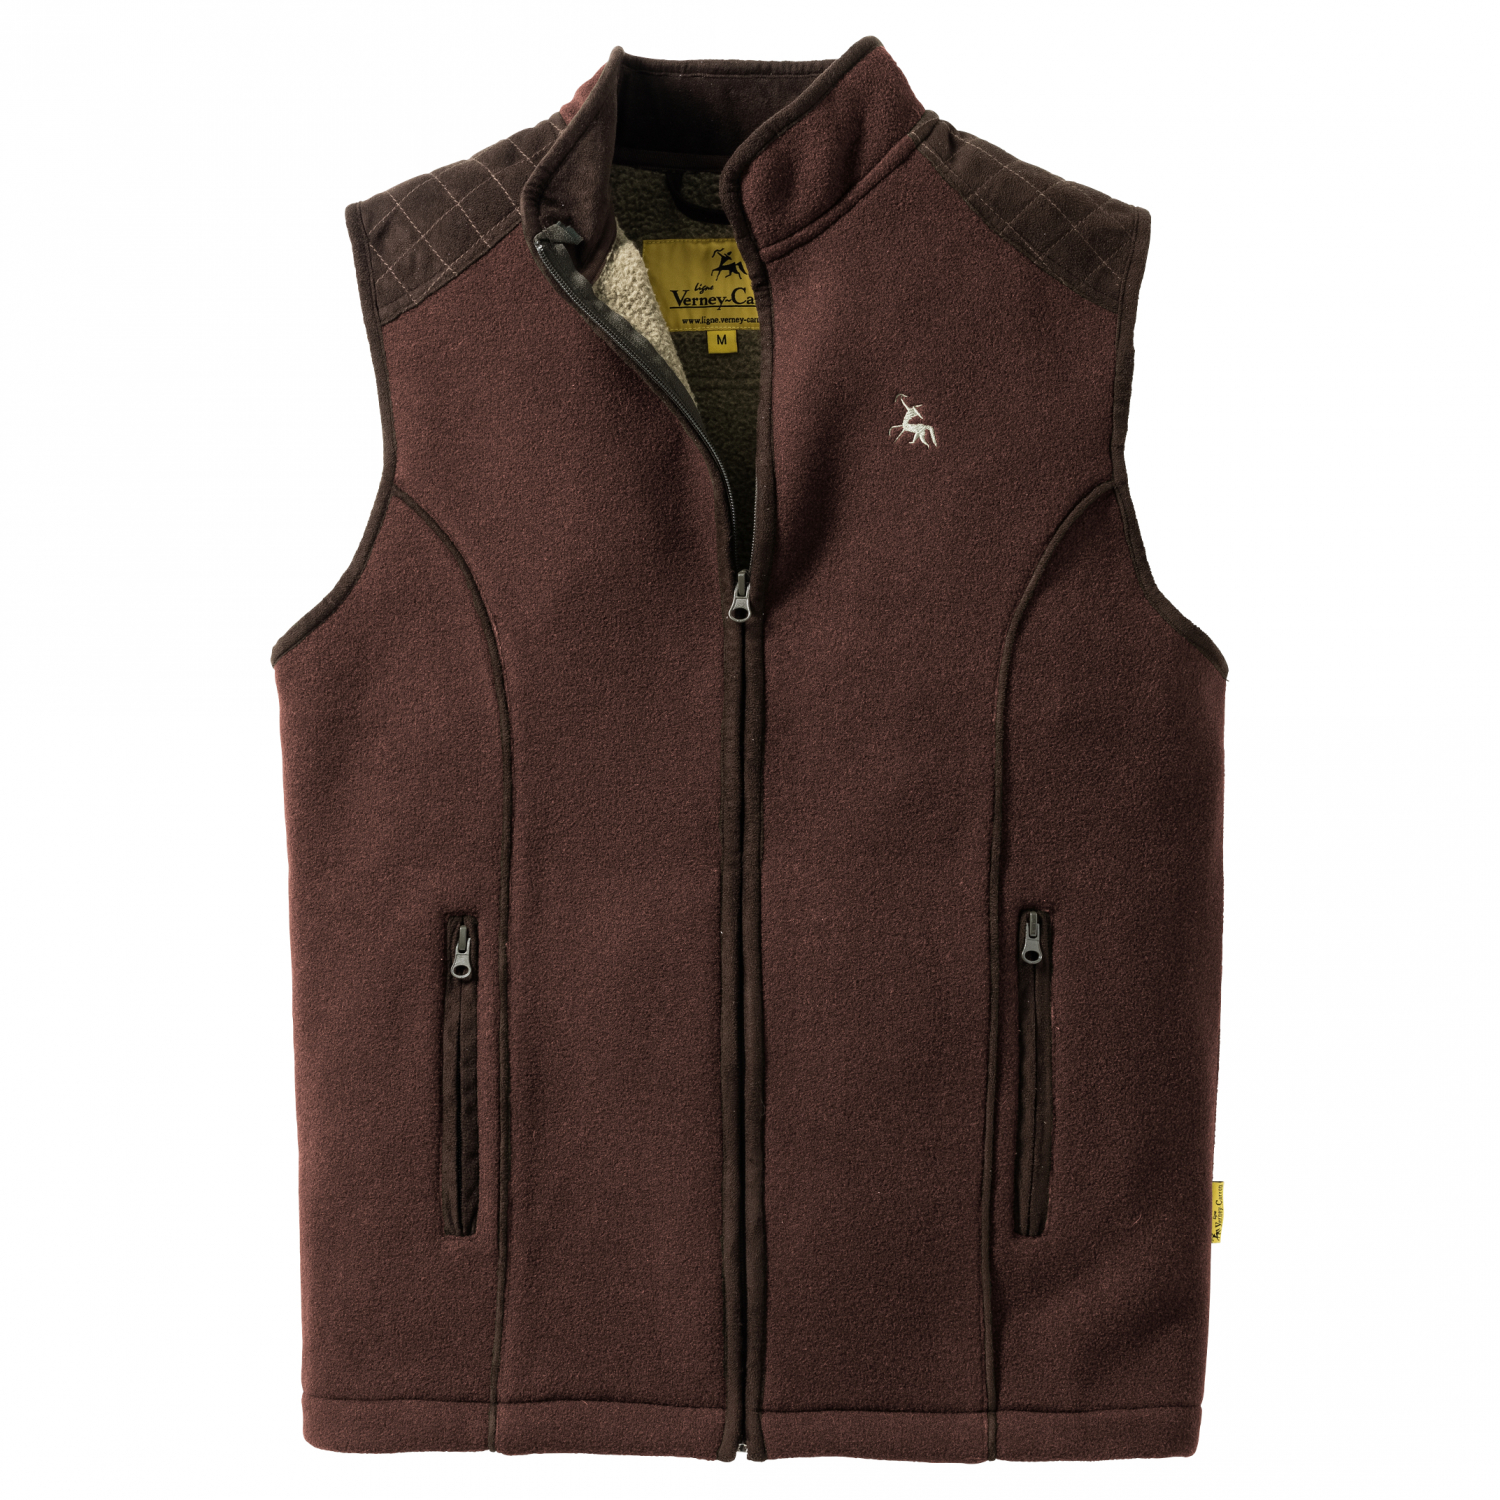 Men's Ligne Verney-Carron Men's Fleece Vest Presley (brown) 